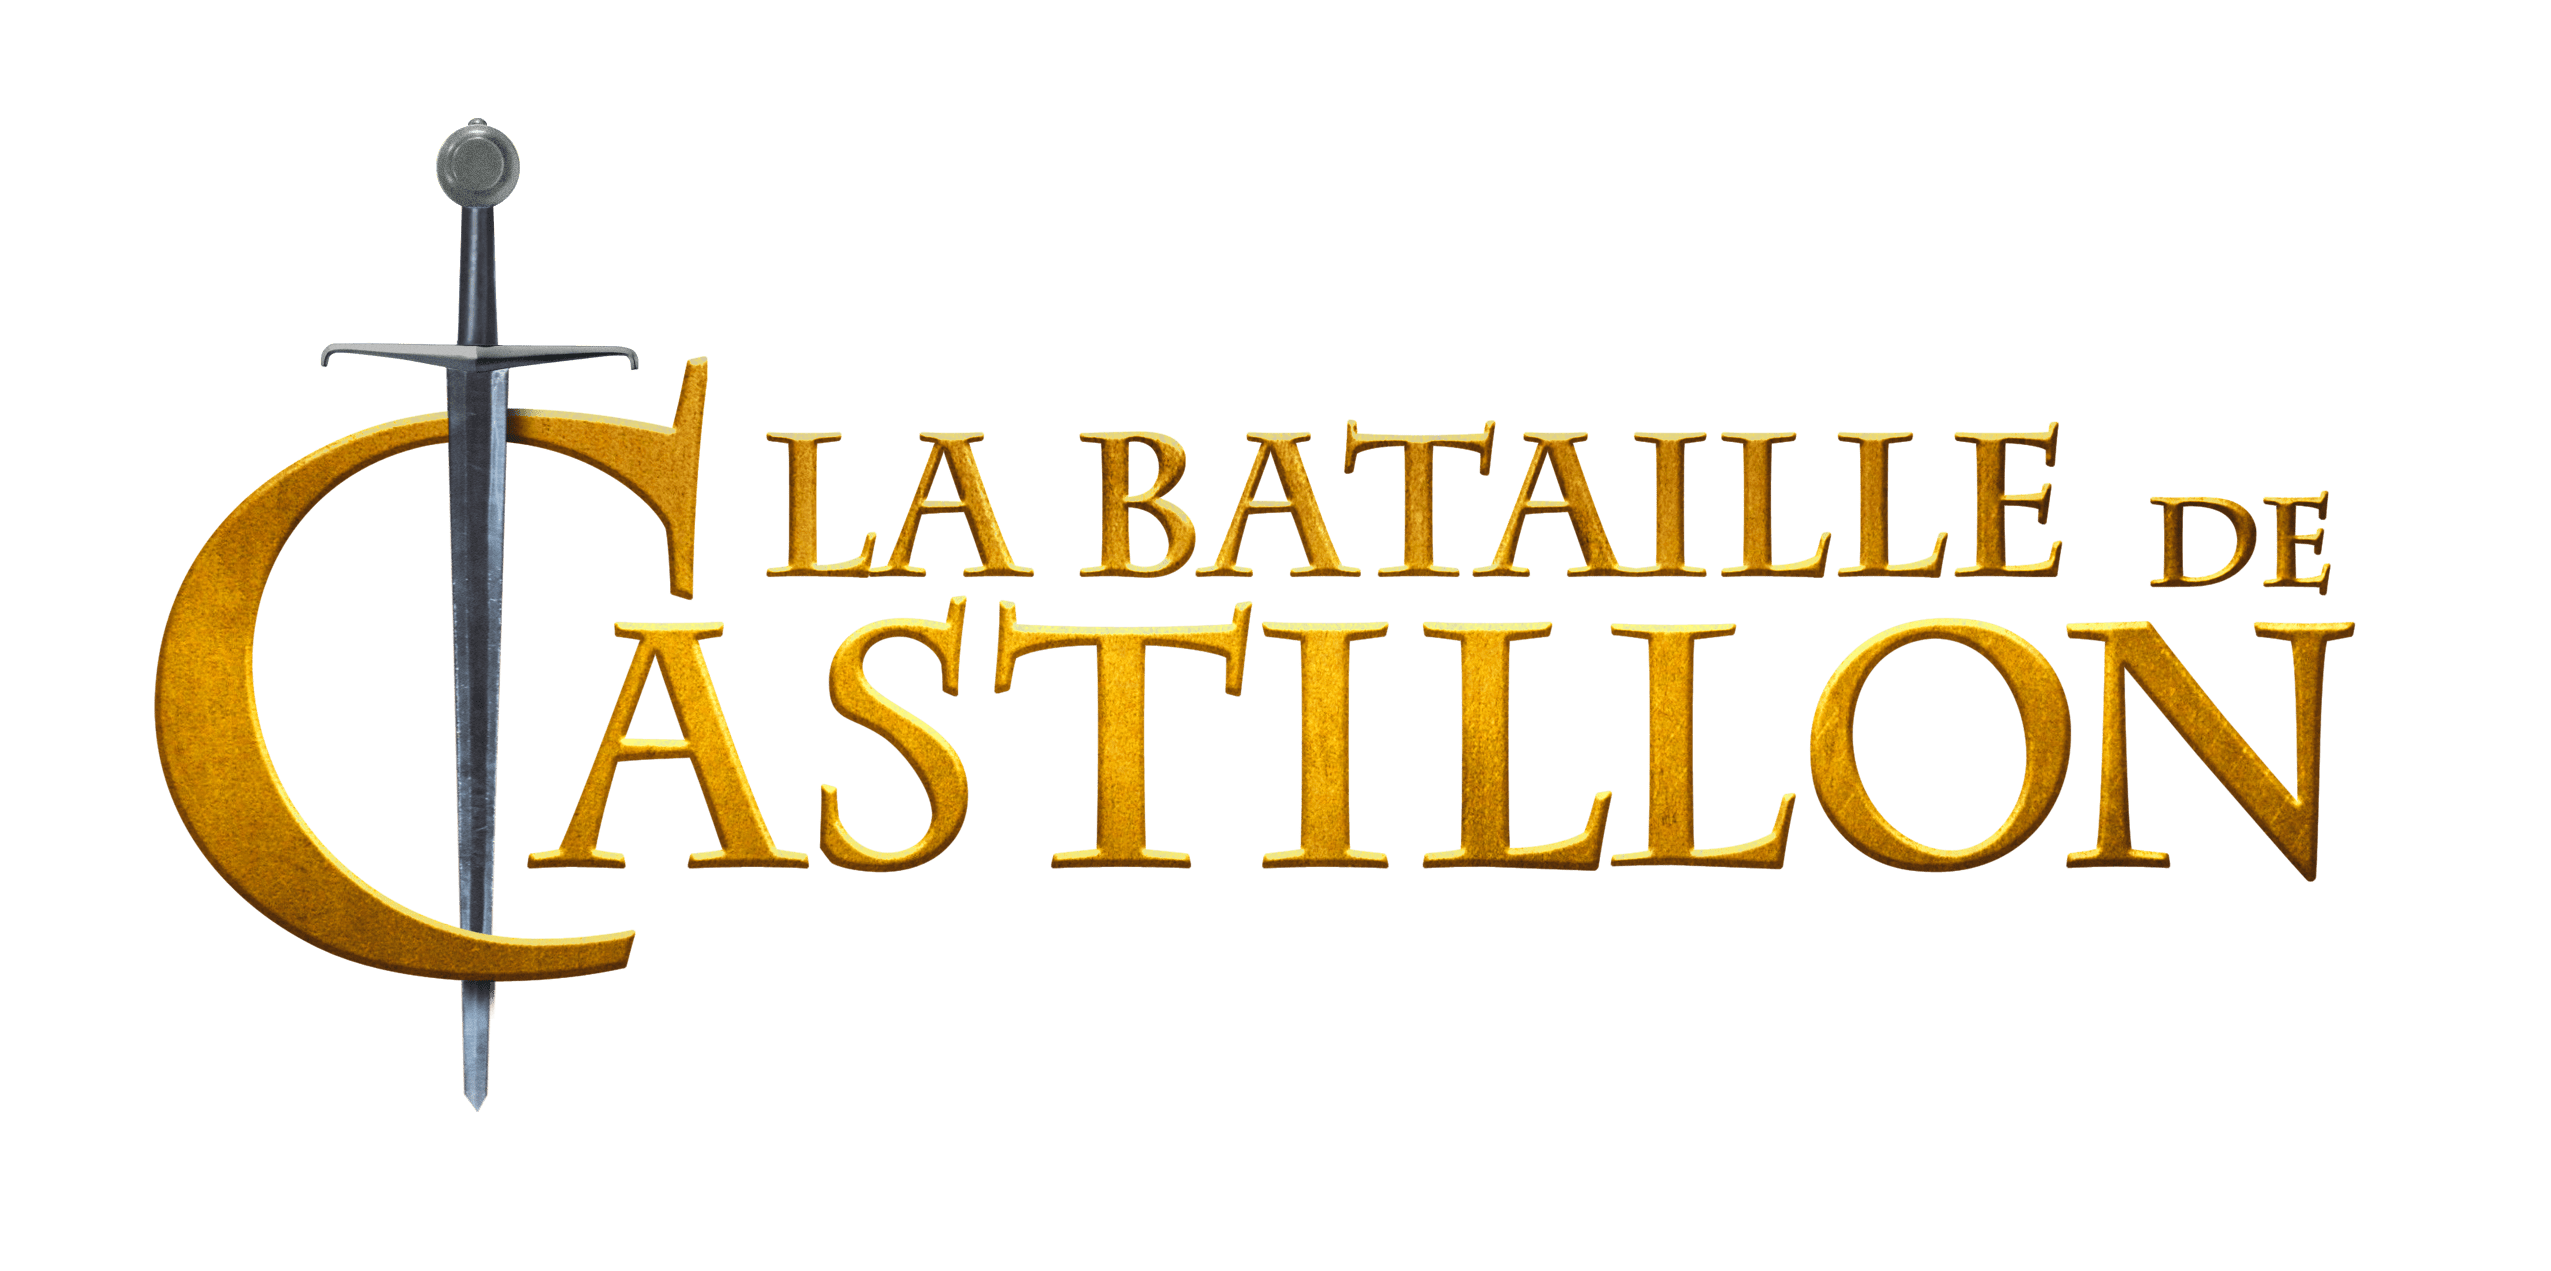 La bataille de Castillon